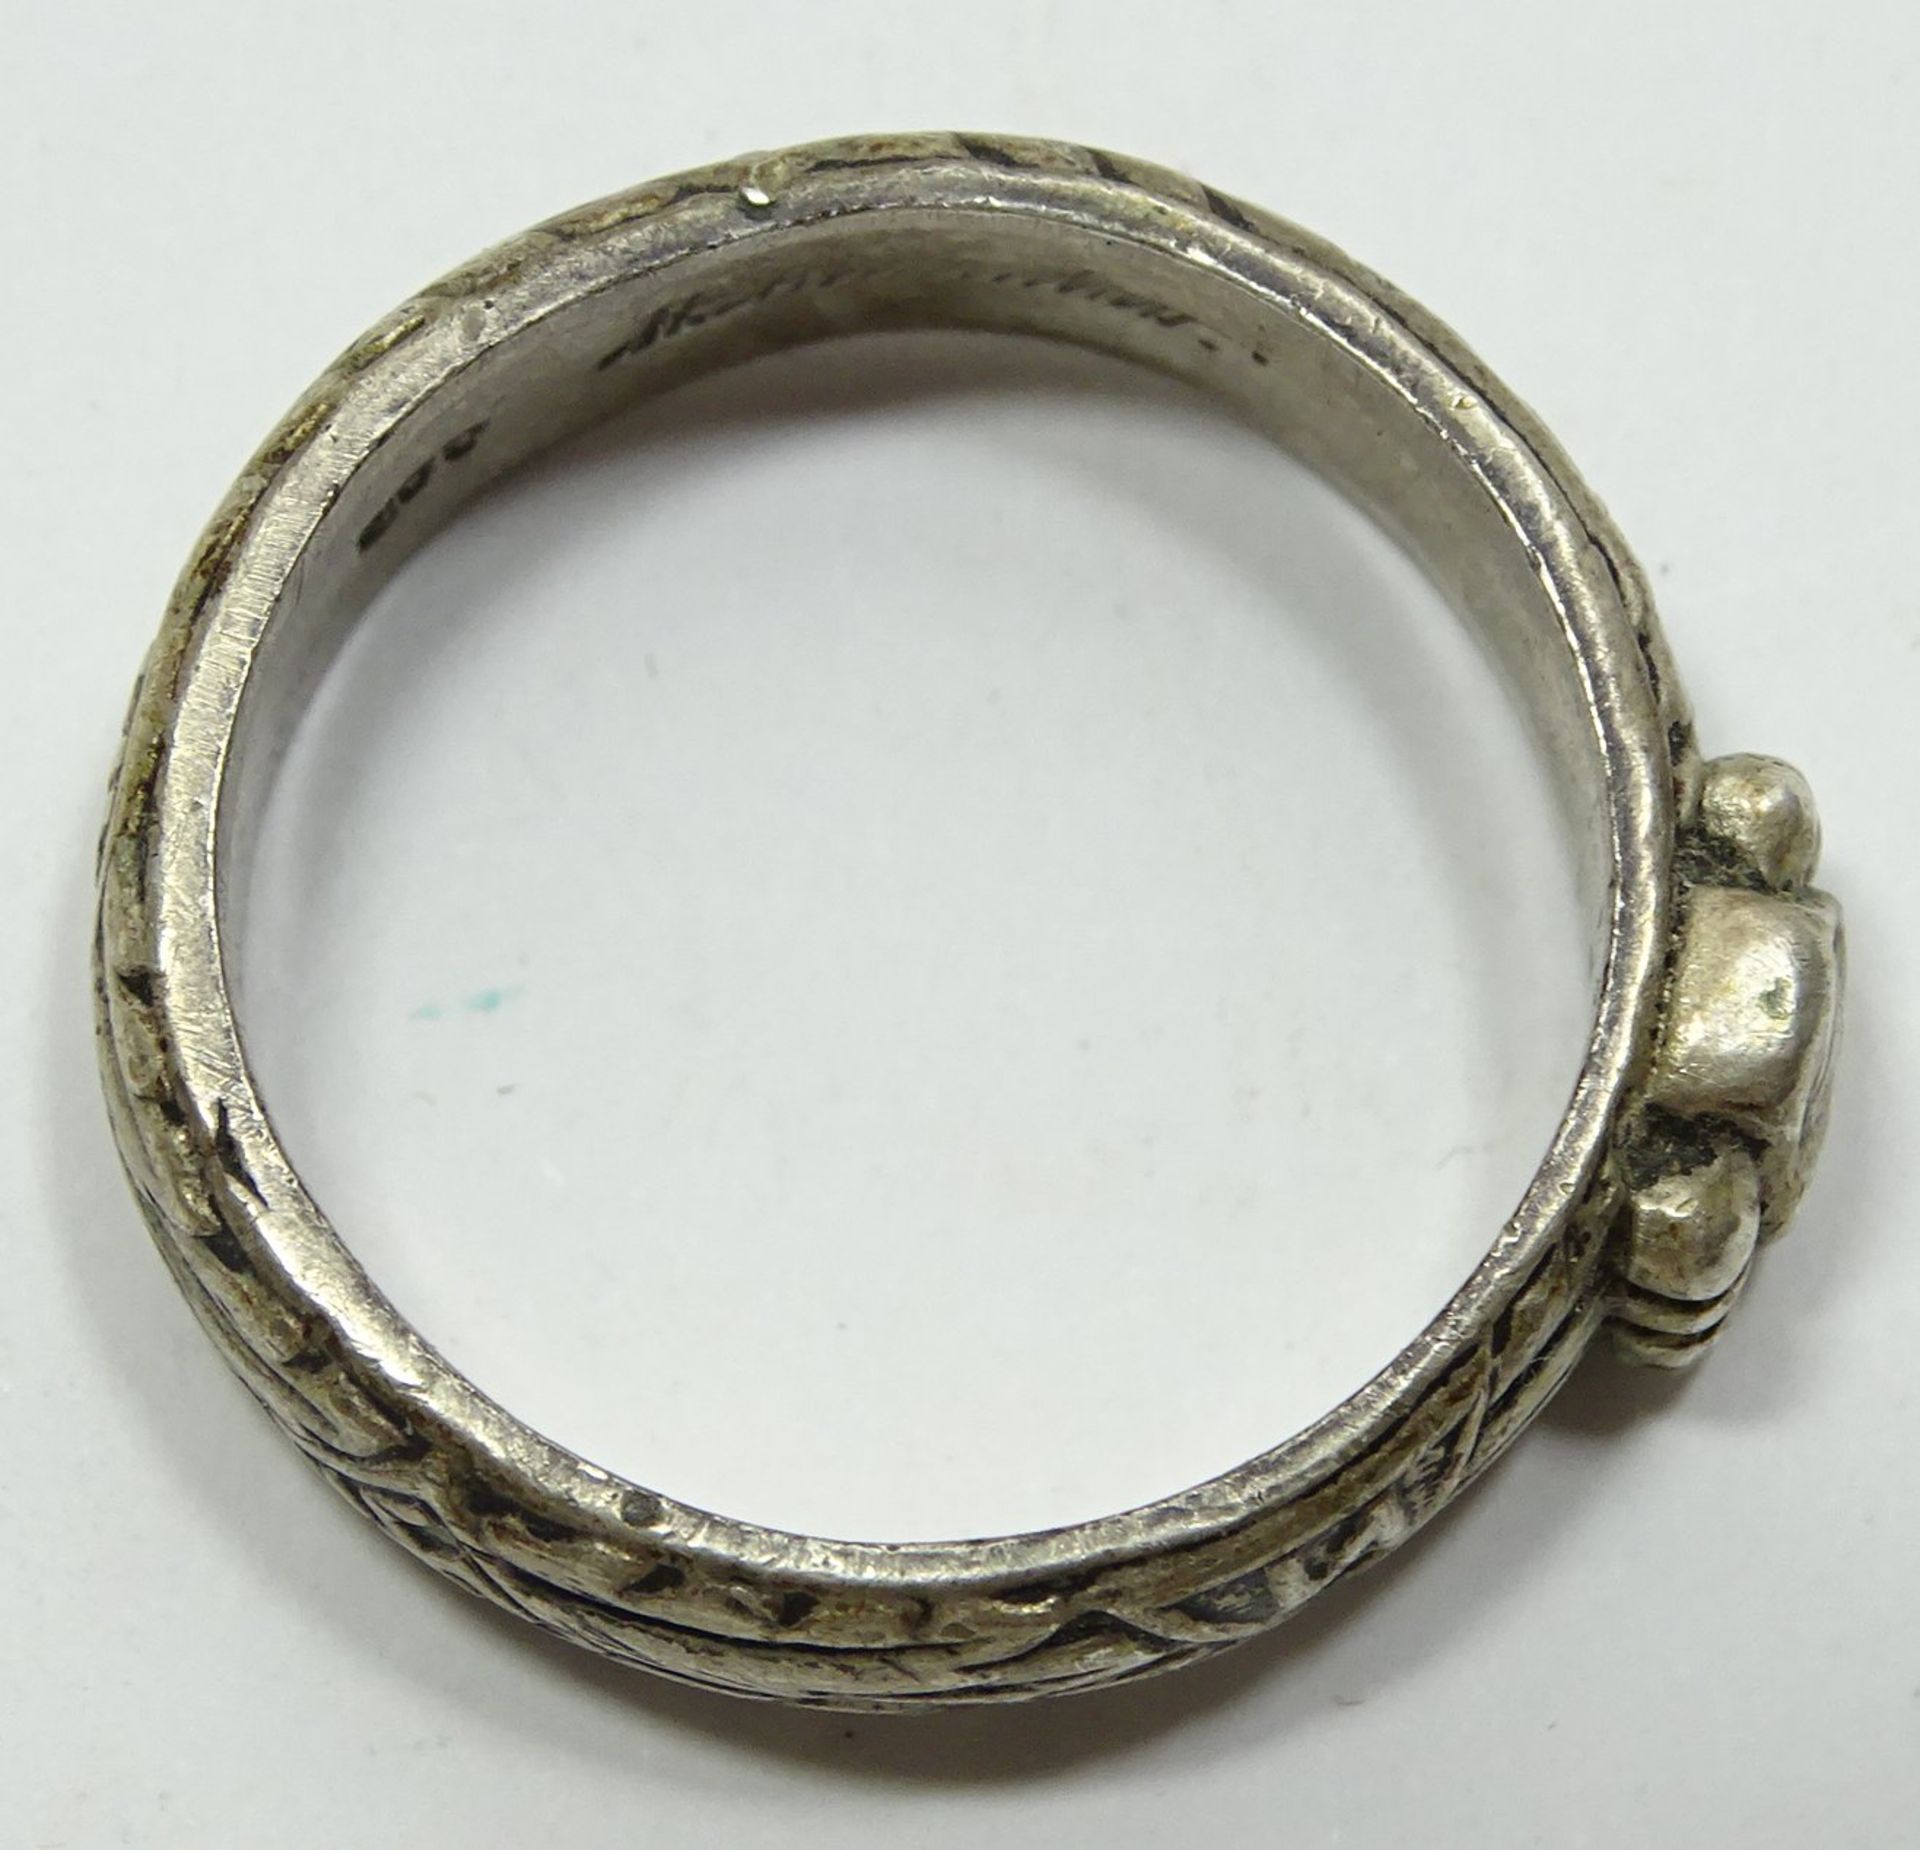 SS-Ring, 800er-Silber, Innenseite graviert "H. Himmler", RG 63/64 - Bild 4 aus 4